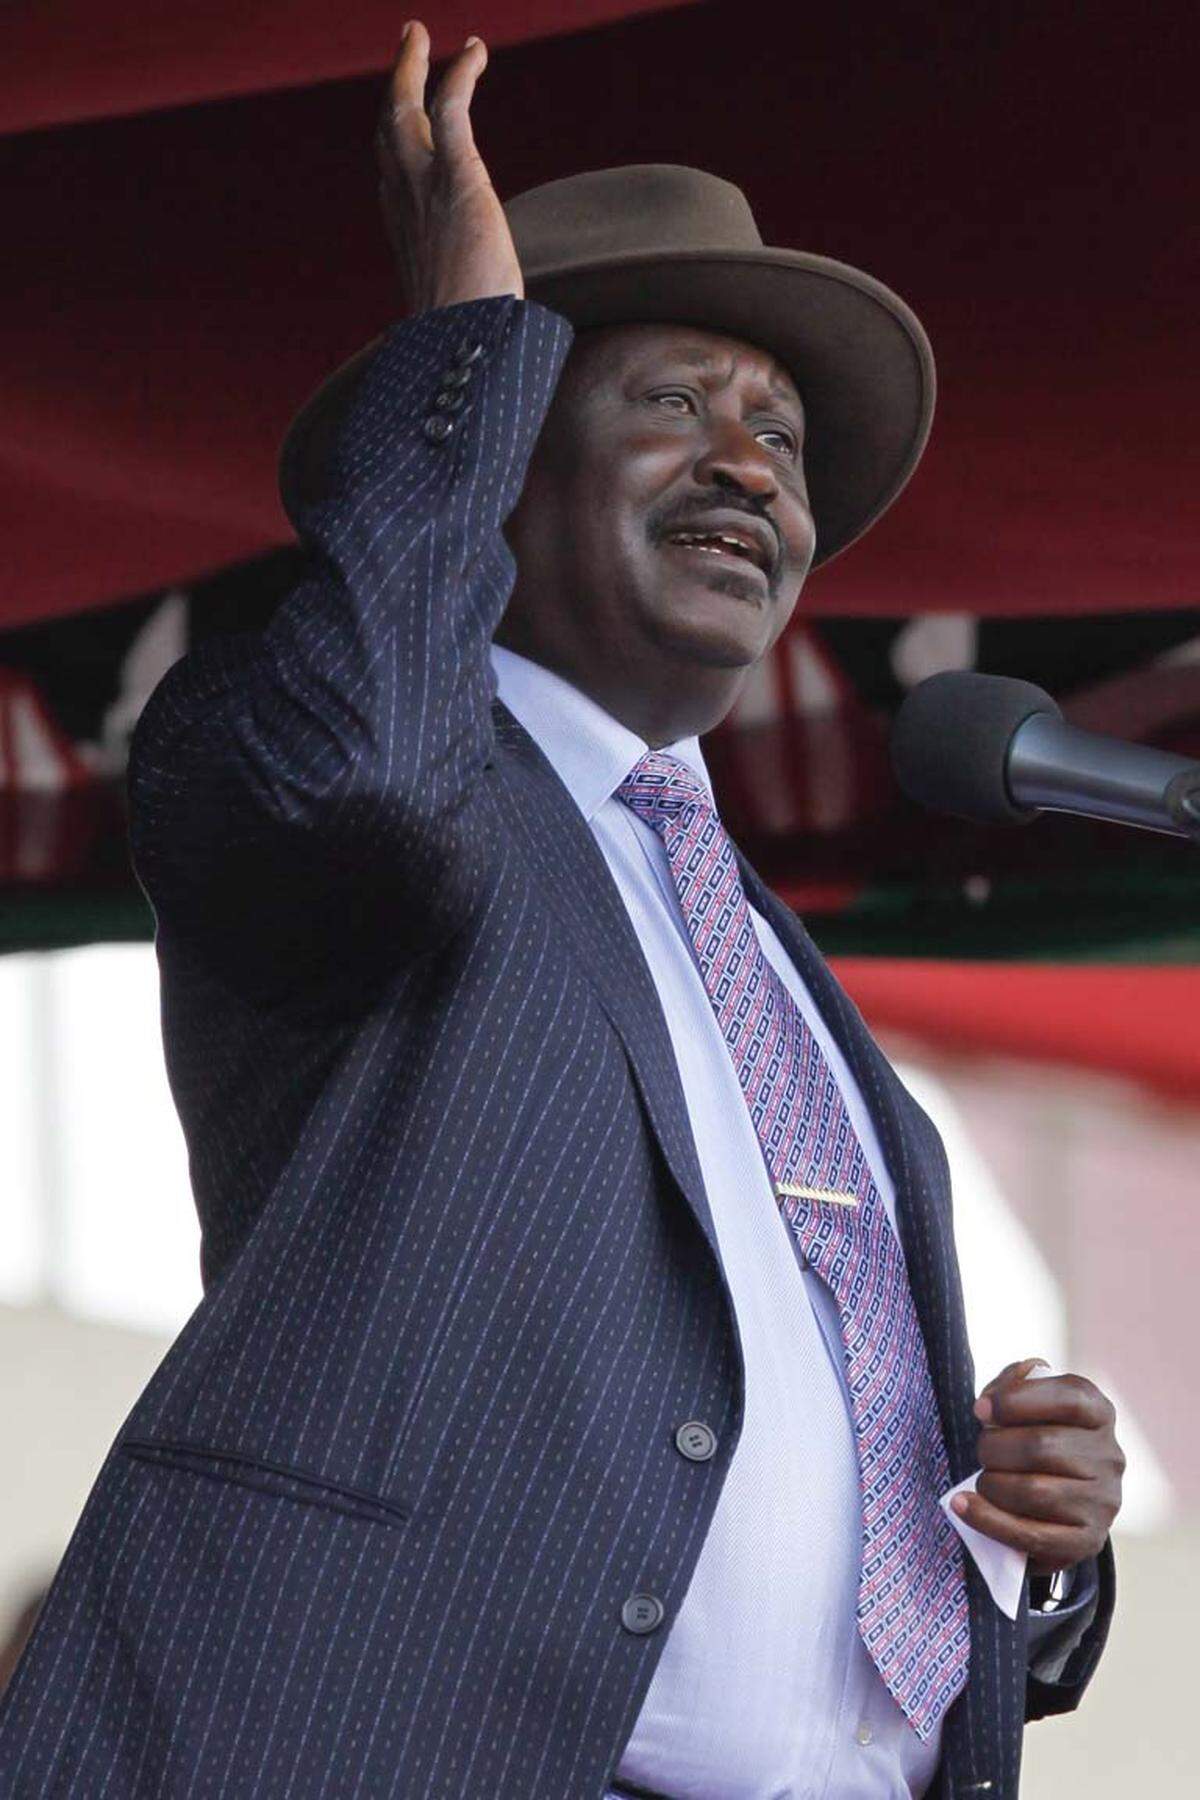 Kenias Premier Raila Odinga mag in absoluten Zahlen nur auf Platz drei liegen, gemessen am Pro-Kopf-Einkommen ist aber dieser Mann einsame Spitze: Das Parlament beschloss im Vorjahr eine Gehaltserhöhung, die Odinga umgerechnet 304.000 Euro im Jahr beschert - das 240 fache des Pro-Kopf-Einkommens Kenias. Das war dem Regierungschef dann aber doch unangenehm, er kündigte an, die Gehaltserhöhung nicht annehmen zu wollen ...